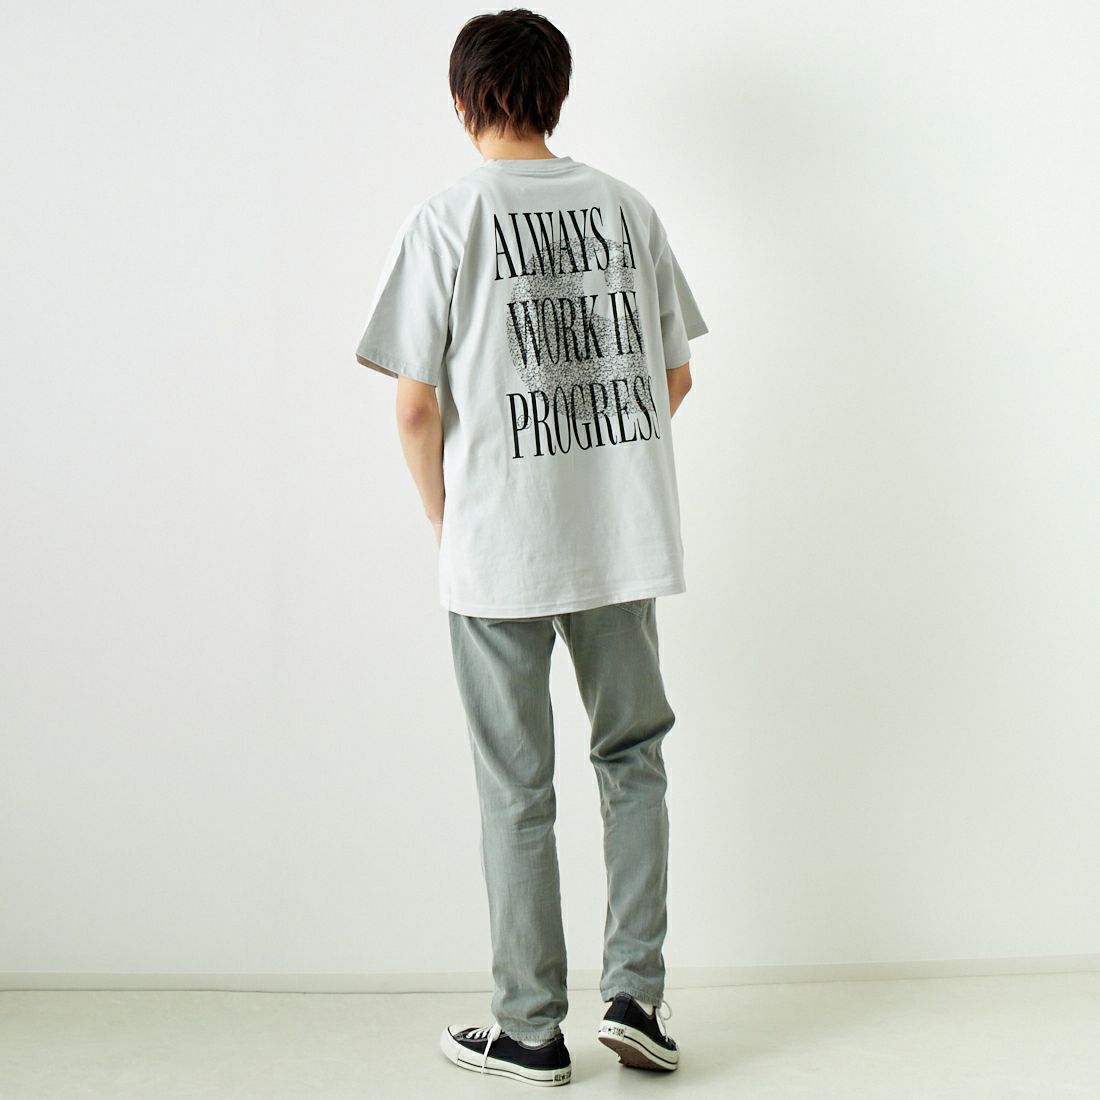 carhartt WIP [カーハートダブリューアイピー] ショートスリーブ オールウェイズアウィップTシャツ [I033174] SONIC SILV &&モデル身長：182cm 着用サイズ：L&&